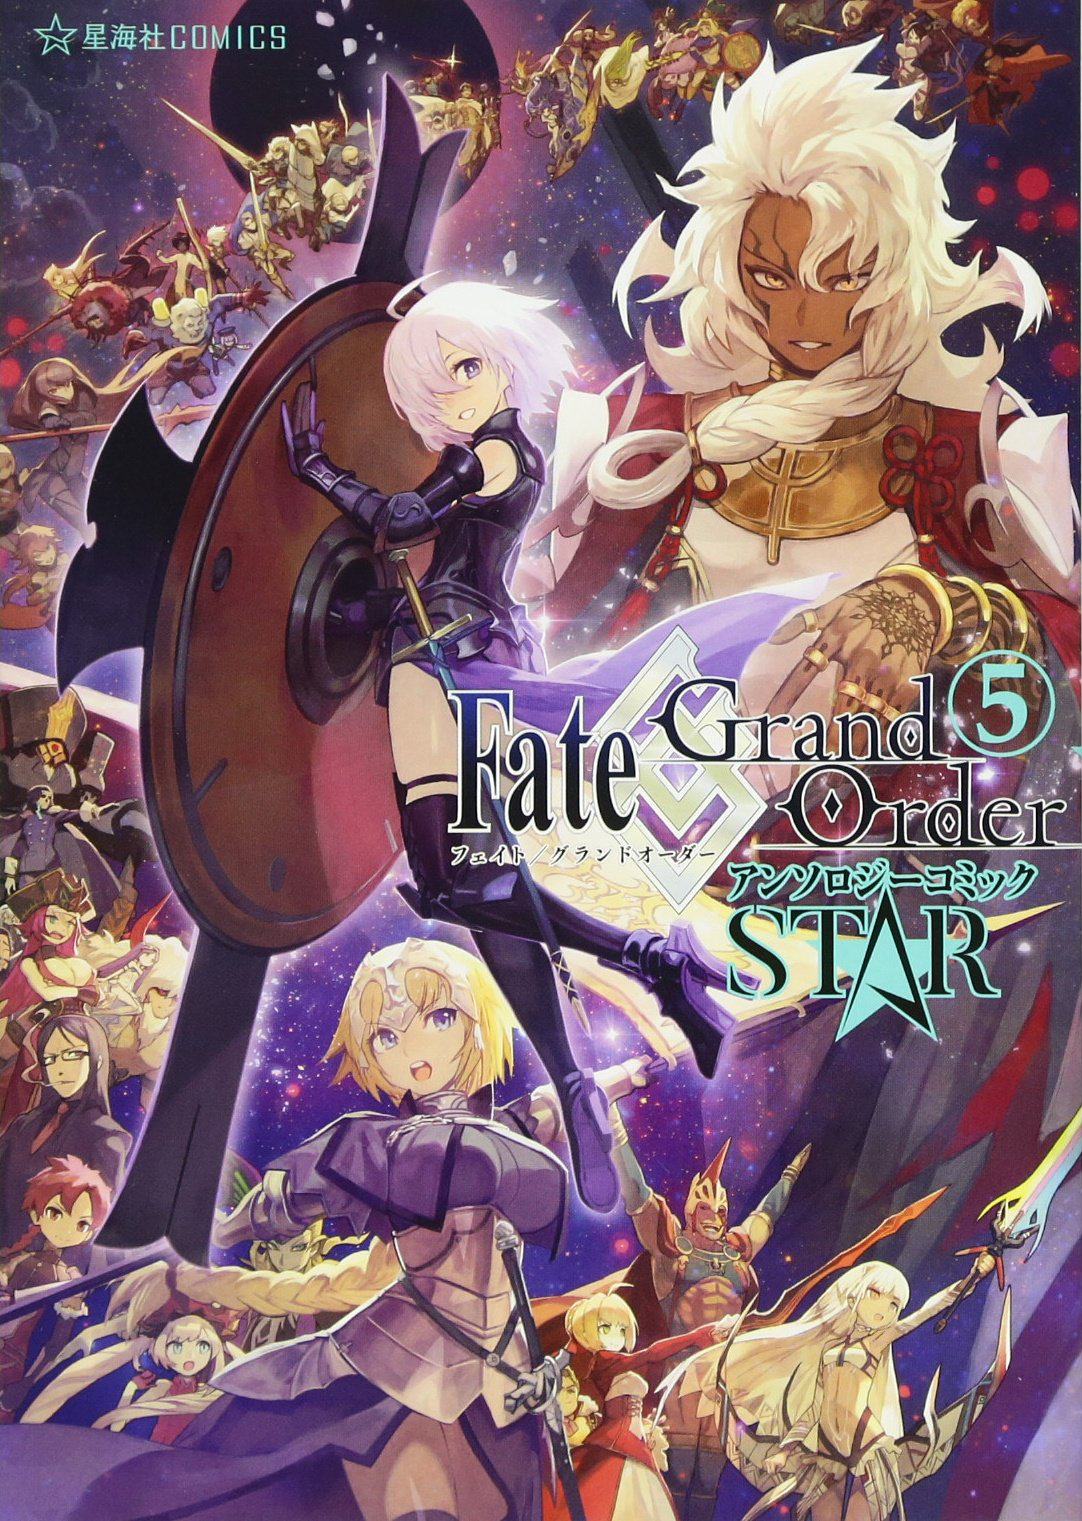 Fate Grand Order 漫畫精選集 STAR 5.jpg